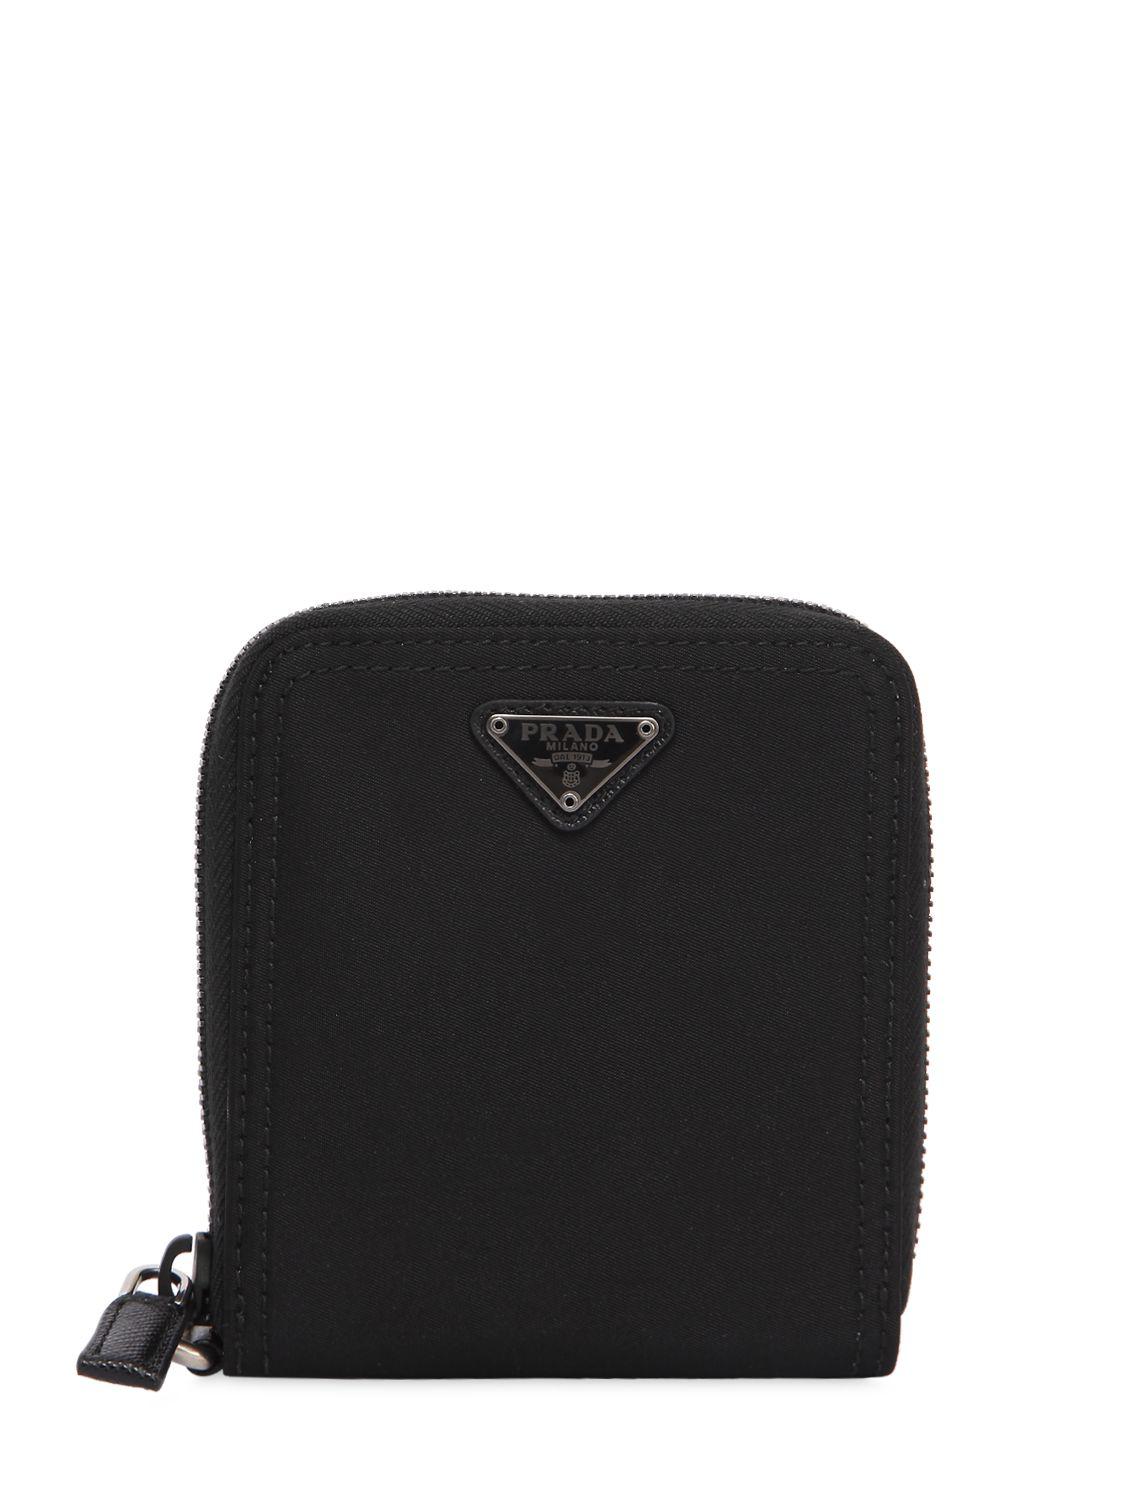 Prada Nylon Zip Around Wallet in Black | Lyst